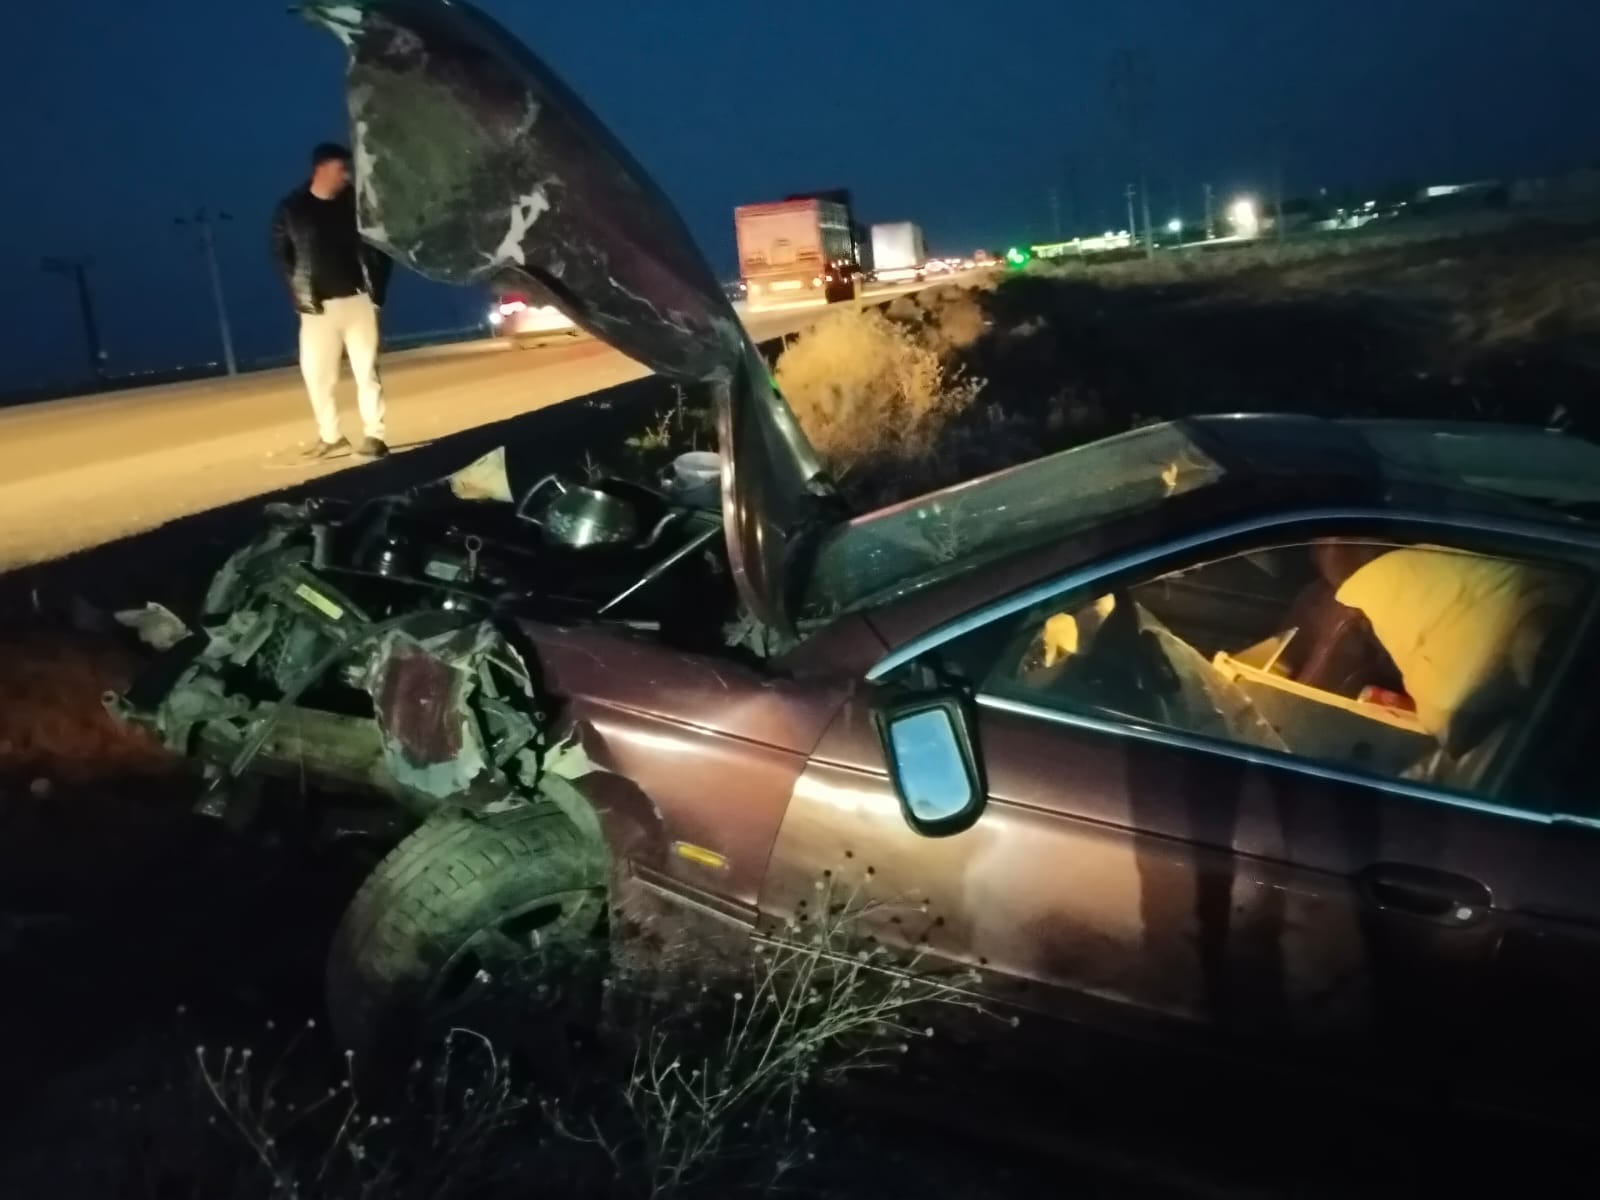 Konya'da iki otomobil çarpıştı: 5 yaralı